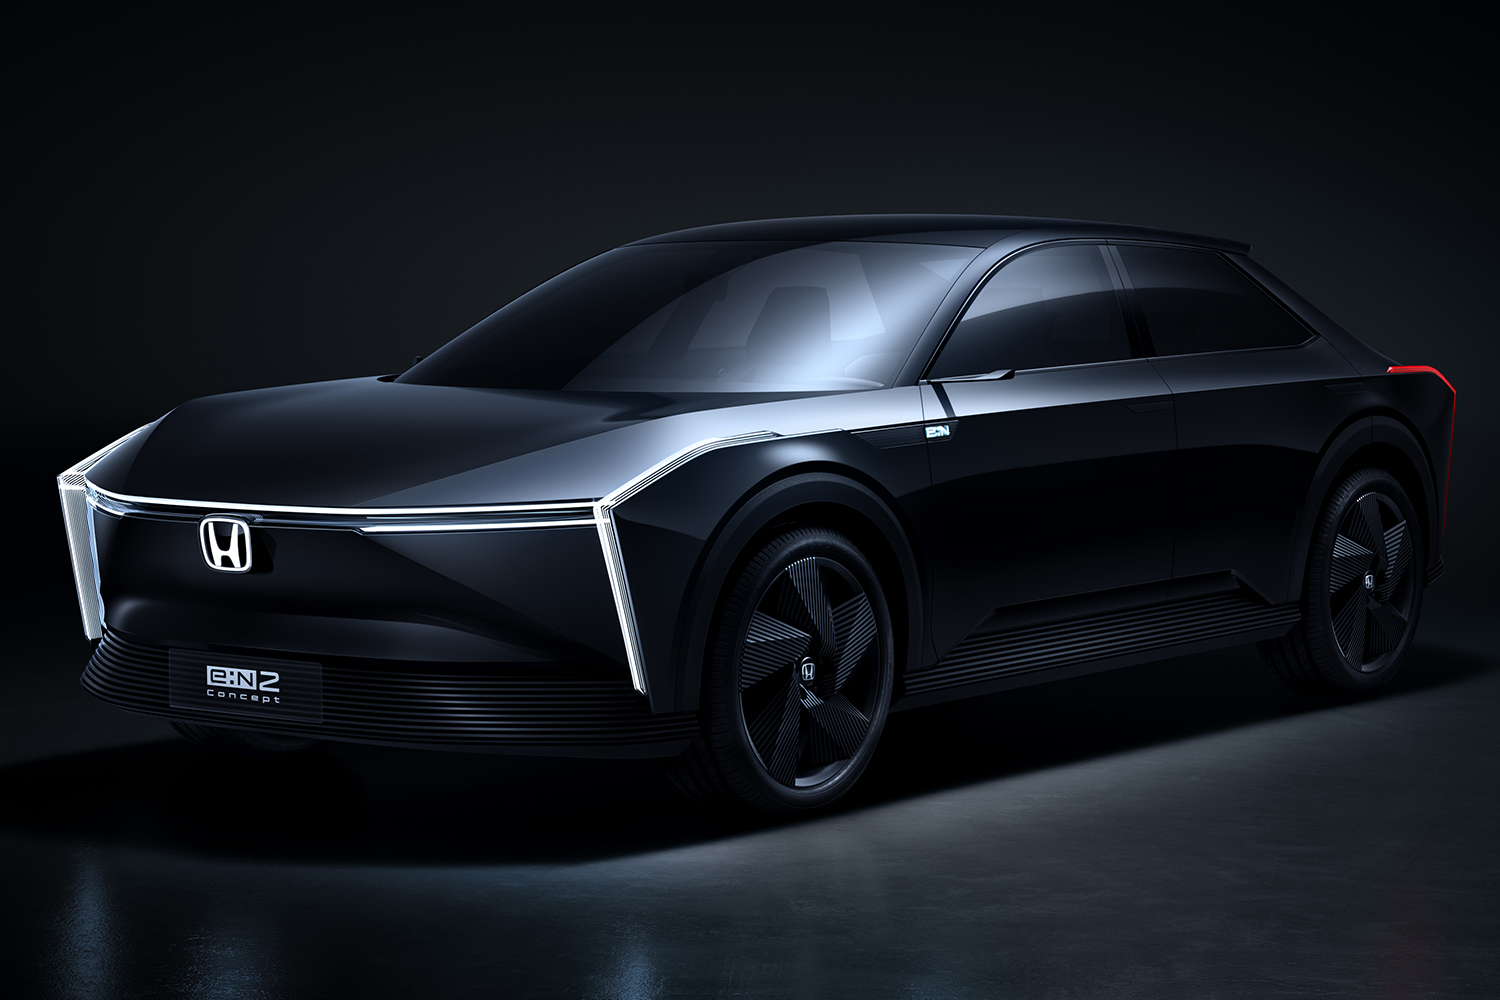 ホンダが新型EVのコンセプトモデル「e:N２ Concept」を世界初公開